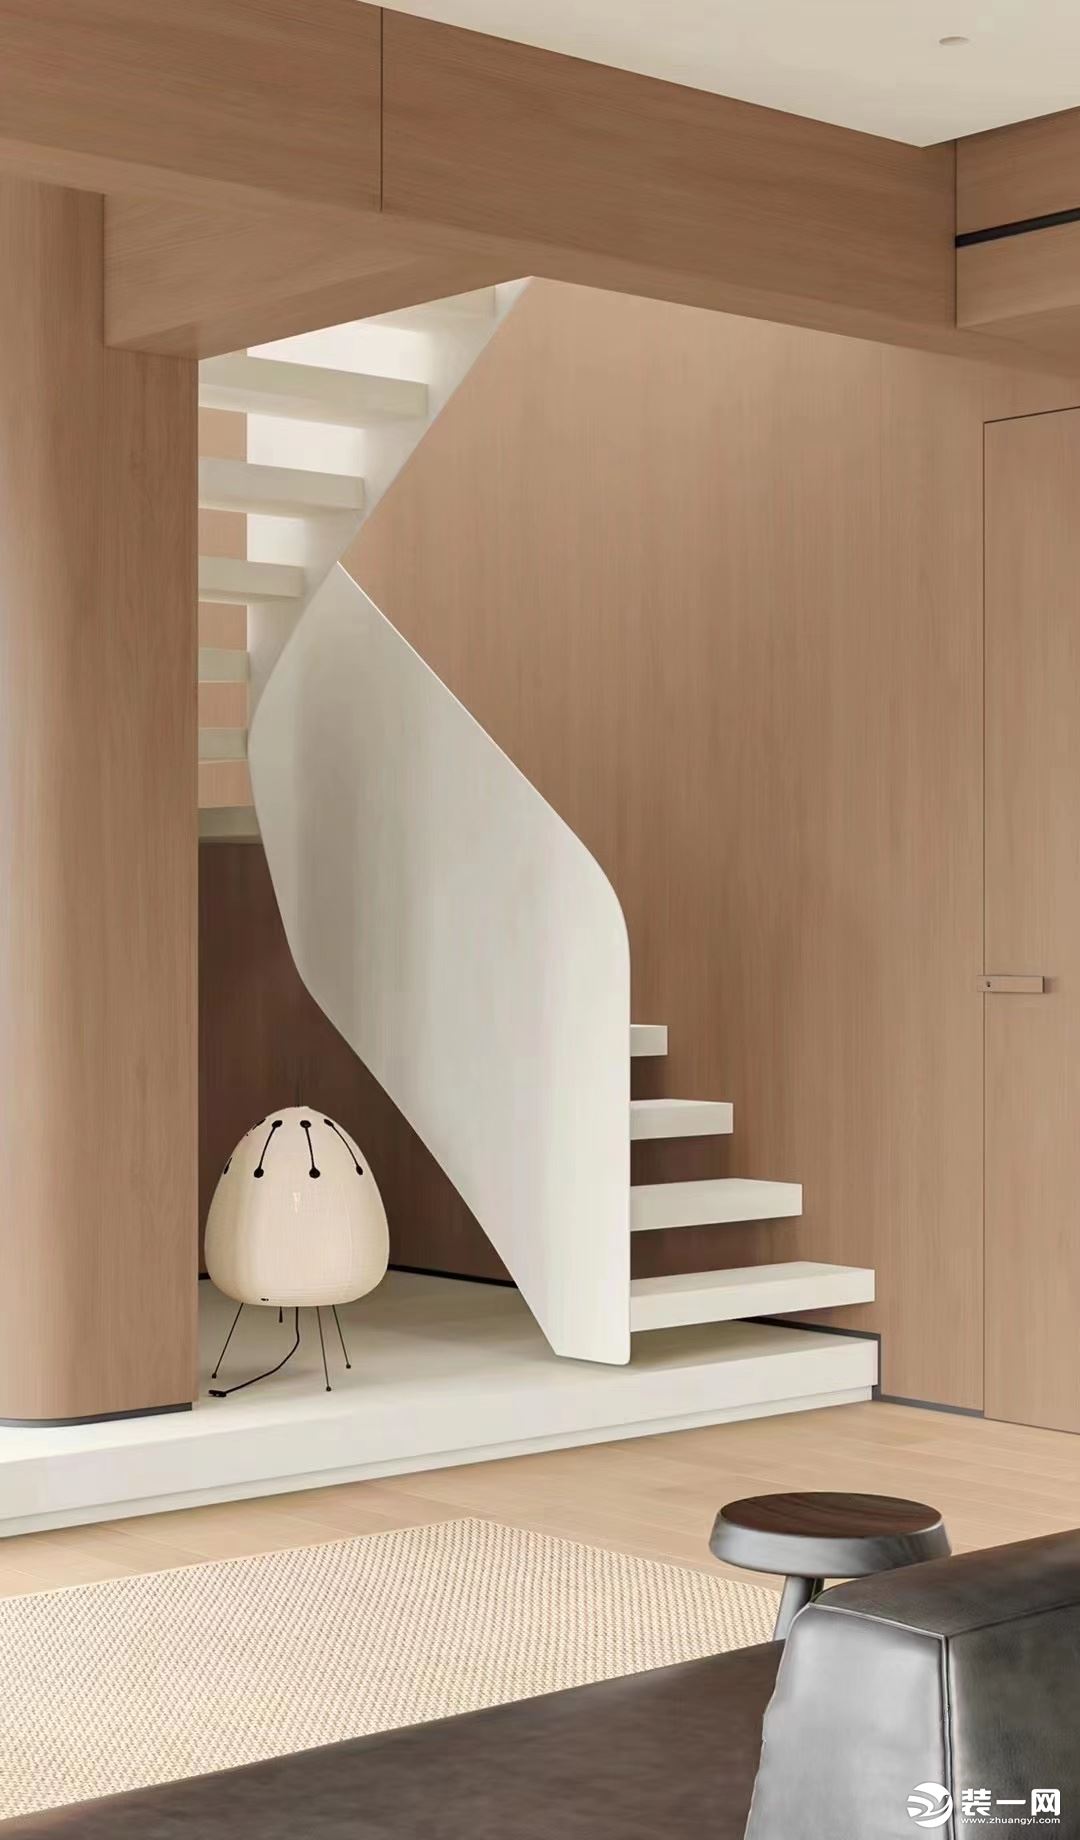 楼梯做旋转式设计，白色台阶与扶手搭配木制墙面与墙柱，时尚简洁又充满大自然的感觉，楼梯下搭配趣感装饰品